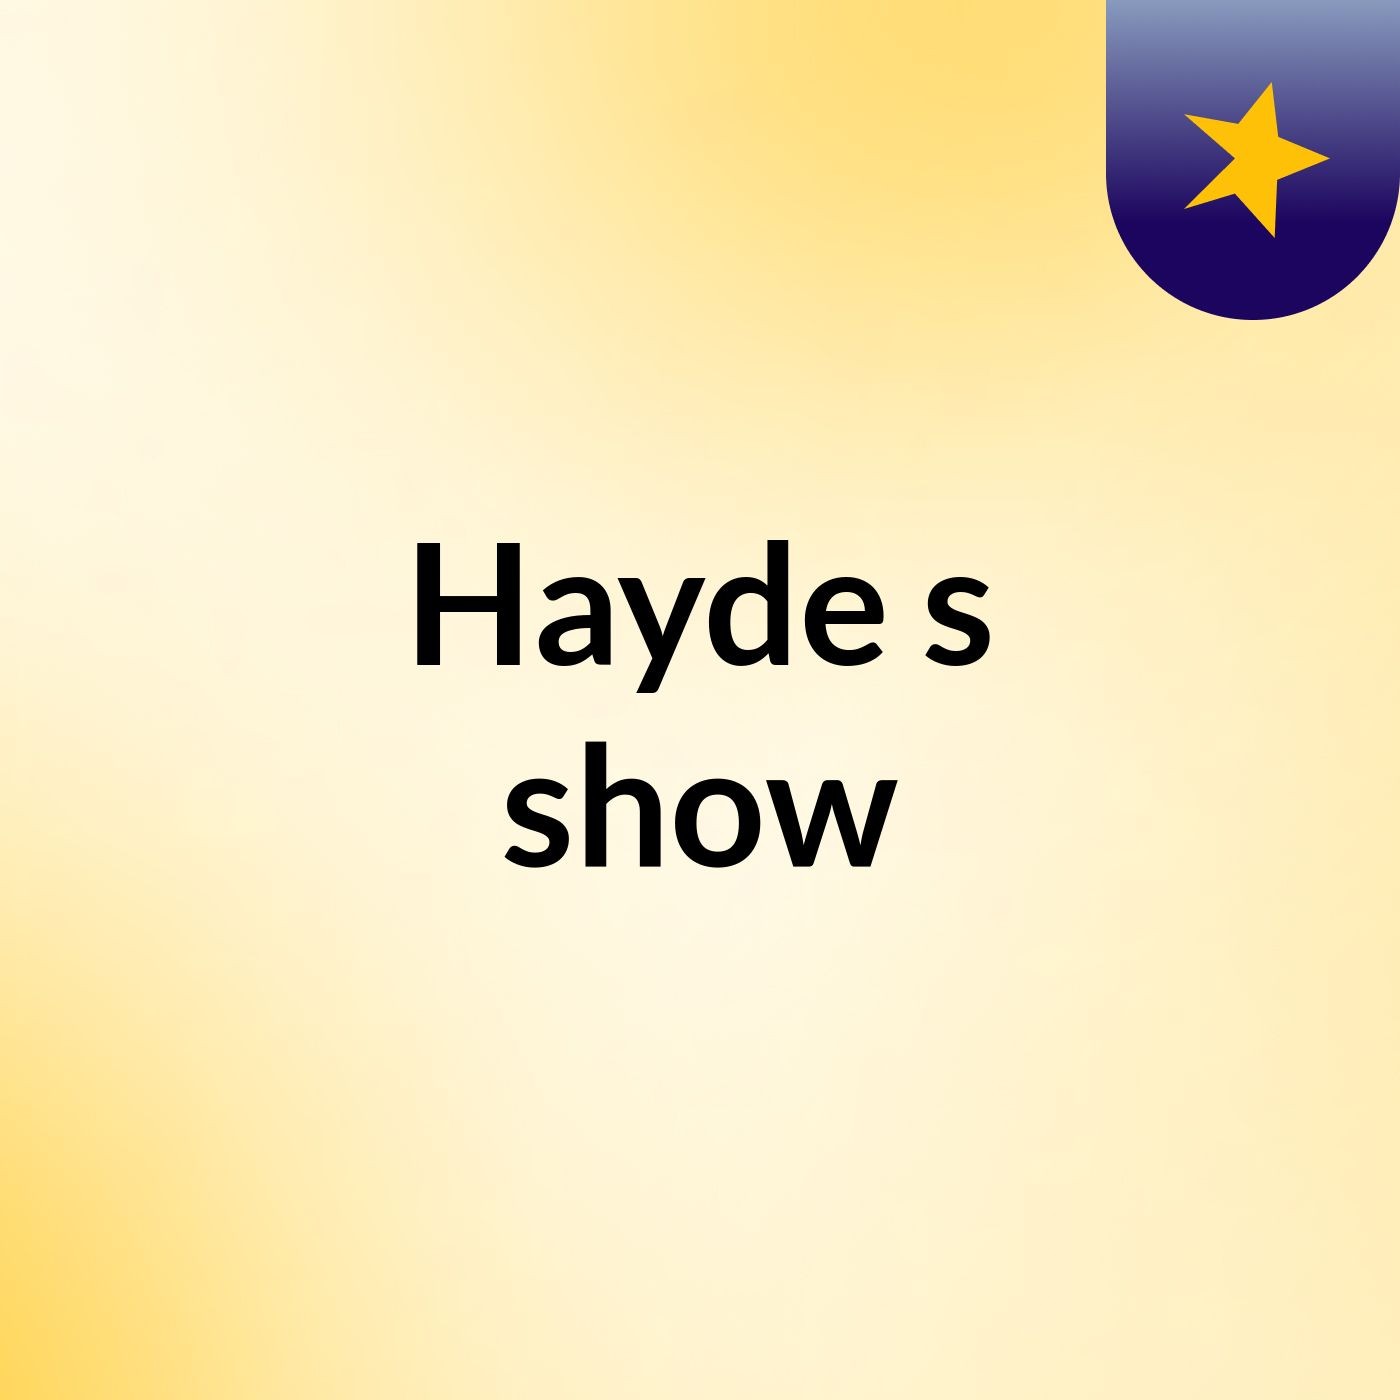 Hayde's show